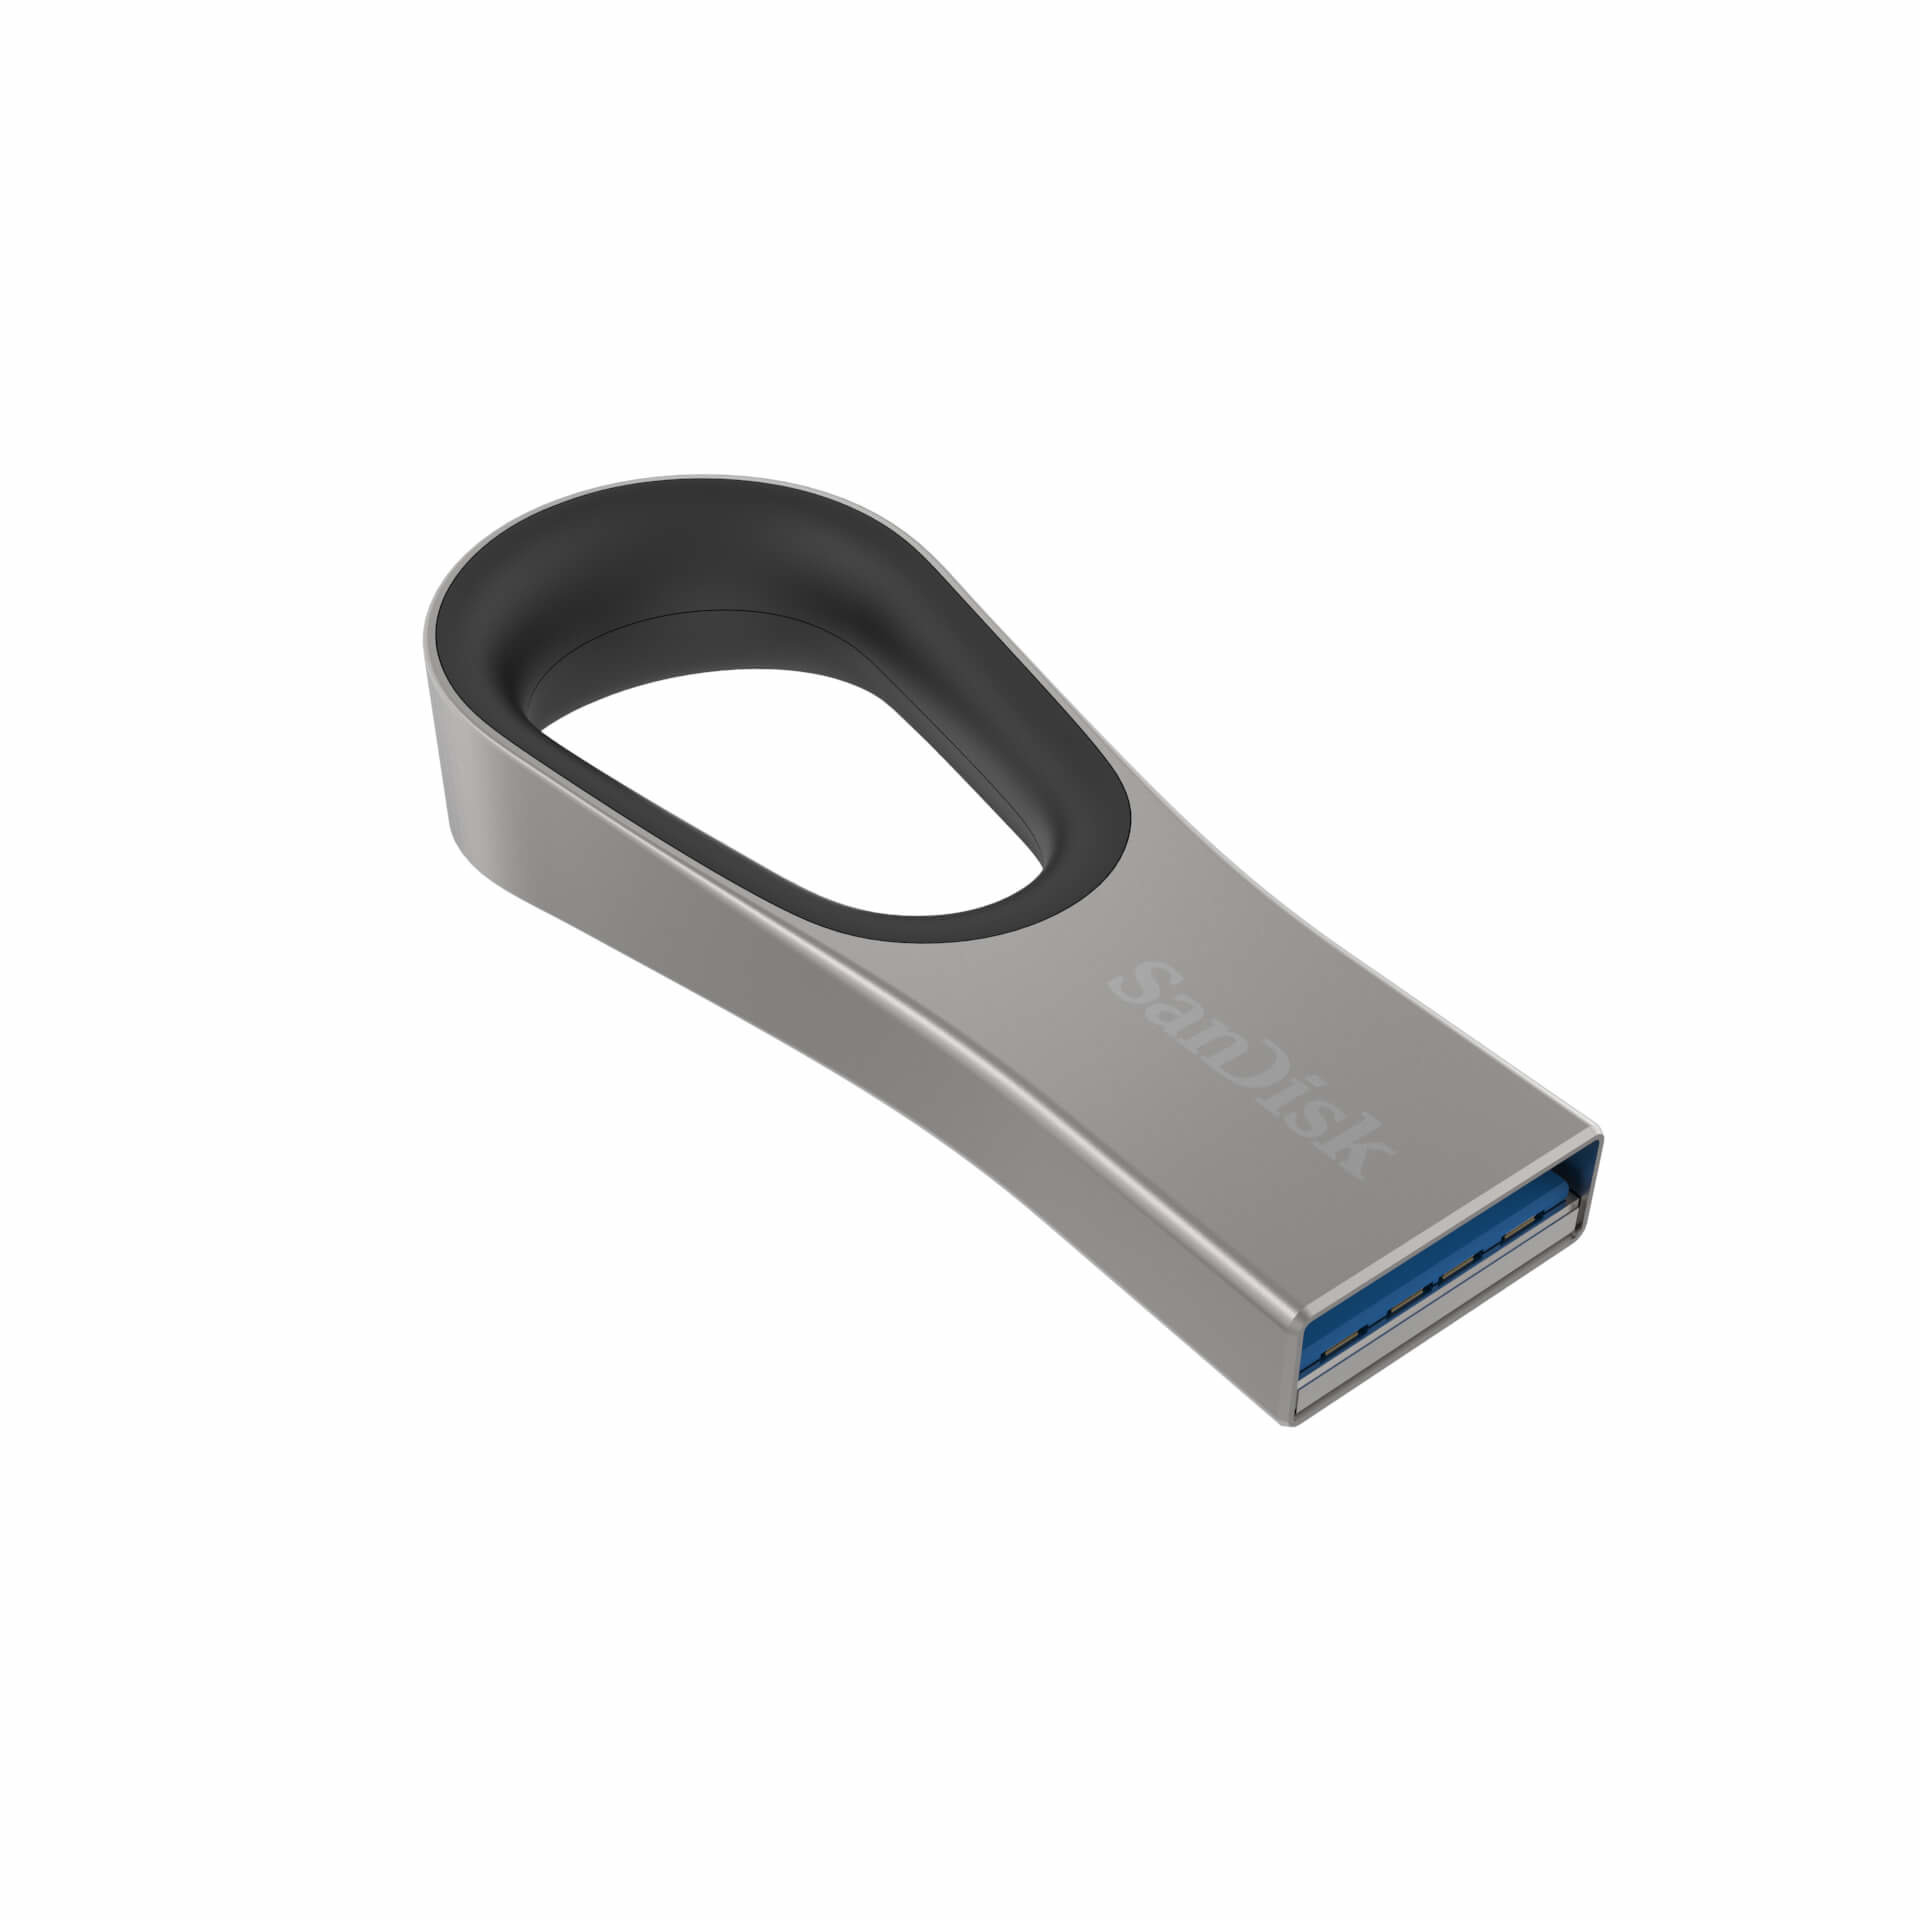 ذاكرة تخزين سان ديسك بحلقة دائرية 64 جيجا بايت , SanDisk 64GB Ultra Loop USB 3.0 Flash Drive